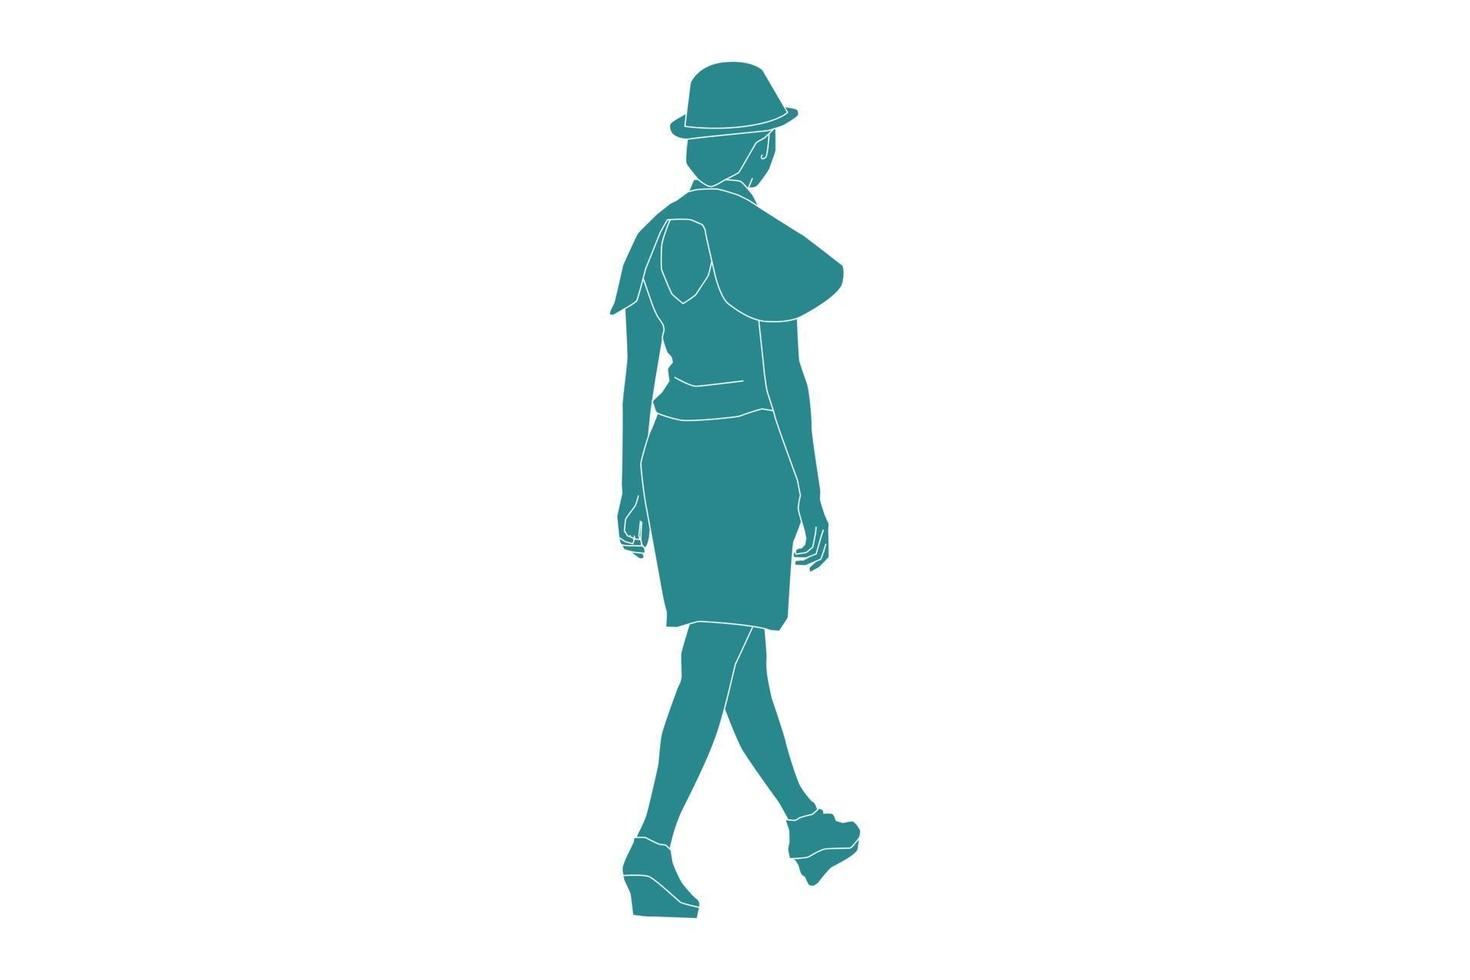 Vektorgrafik von lässigen Frauen, die von hinten gehen, flacher Stil mit Umriss vektor